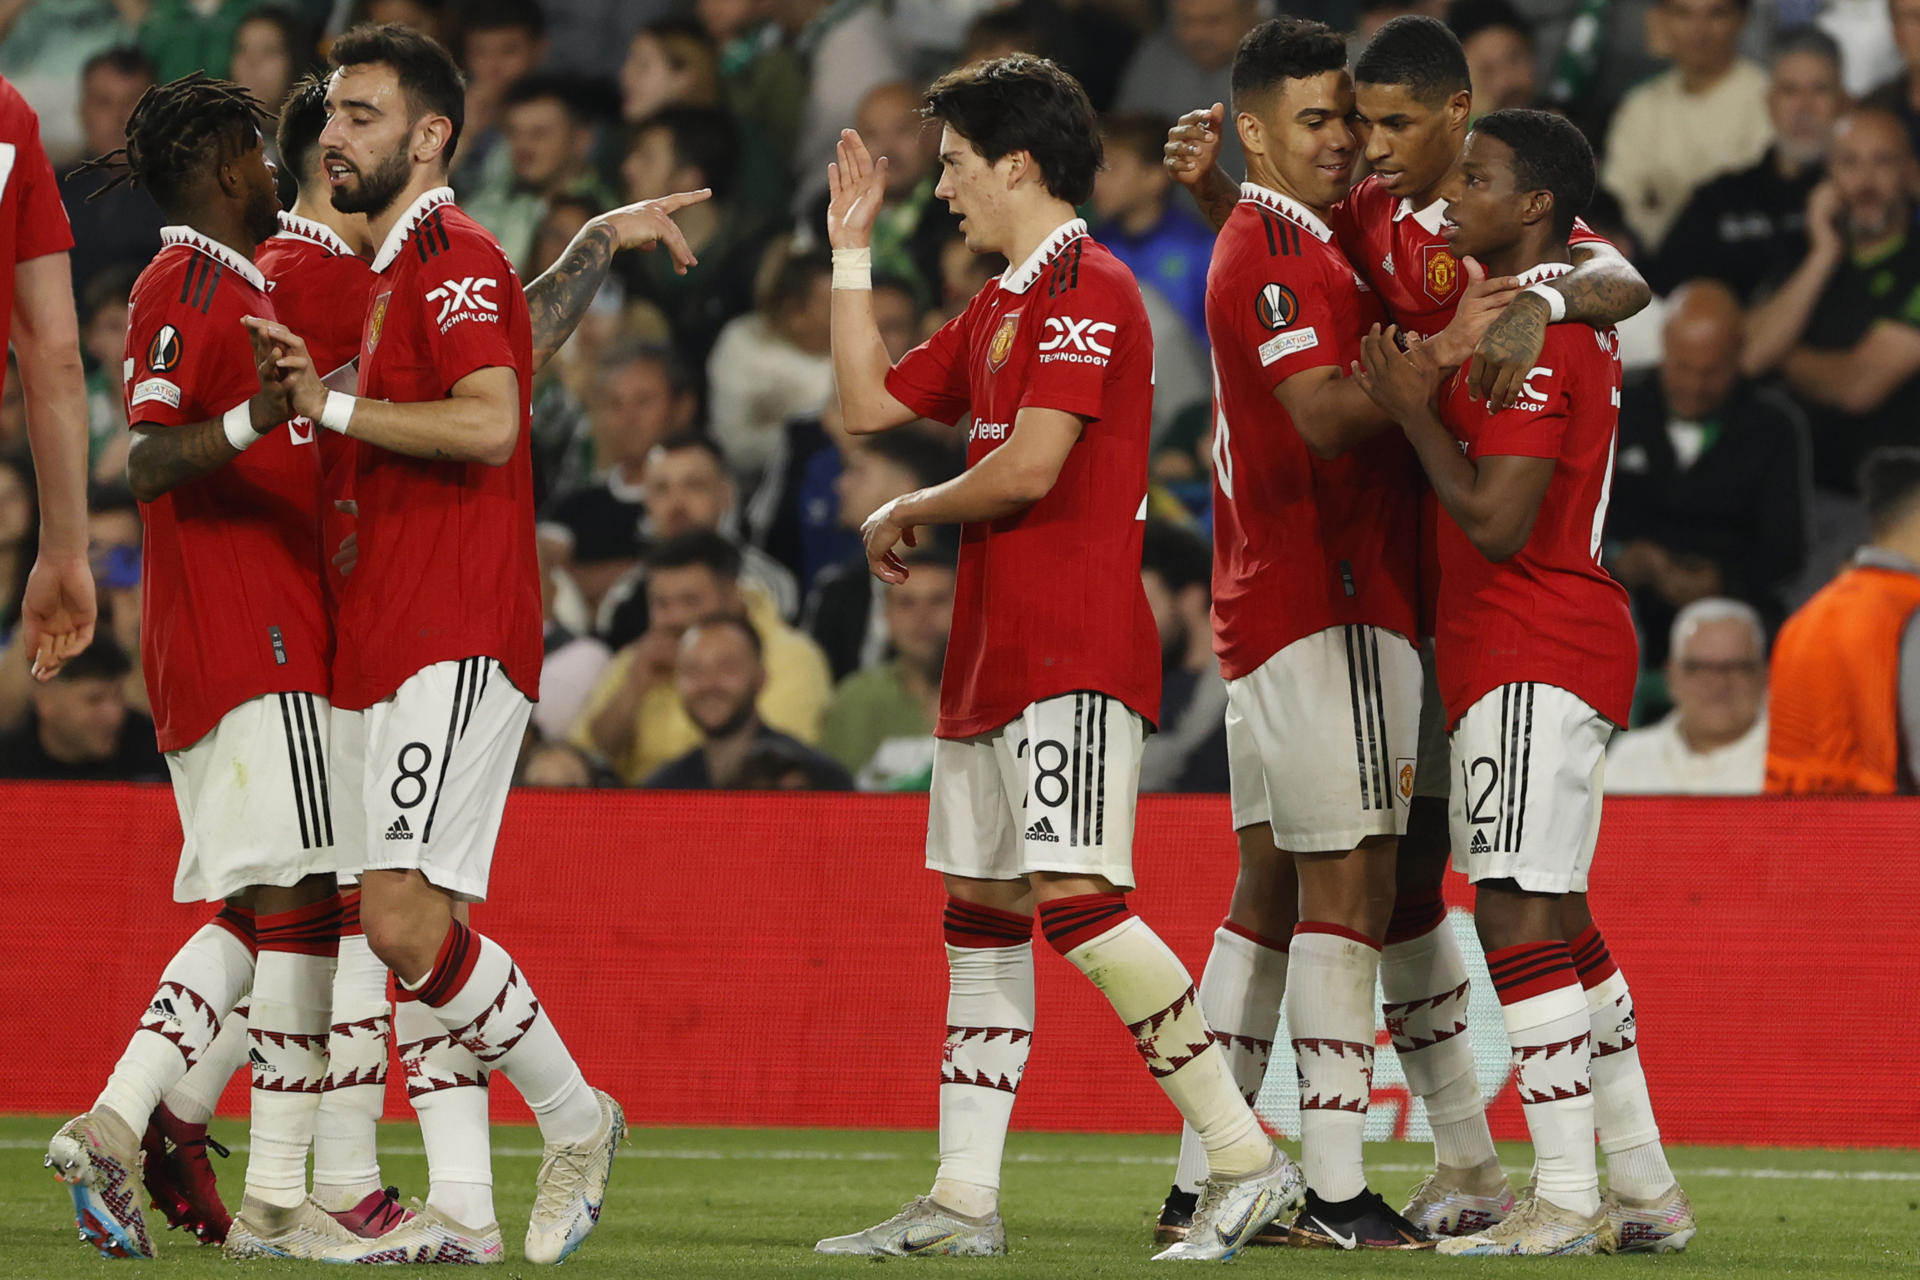 Los jugadores del Manchester United celebran el gol marcador Marcus Rashford al Real Betis. EFE/ Raul Caro